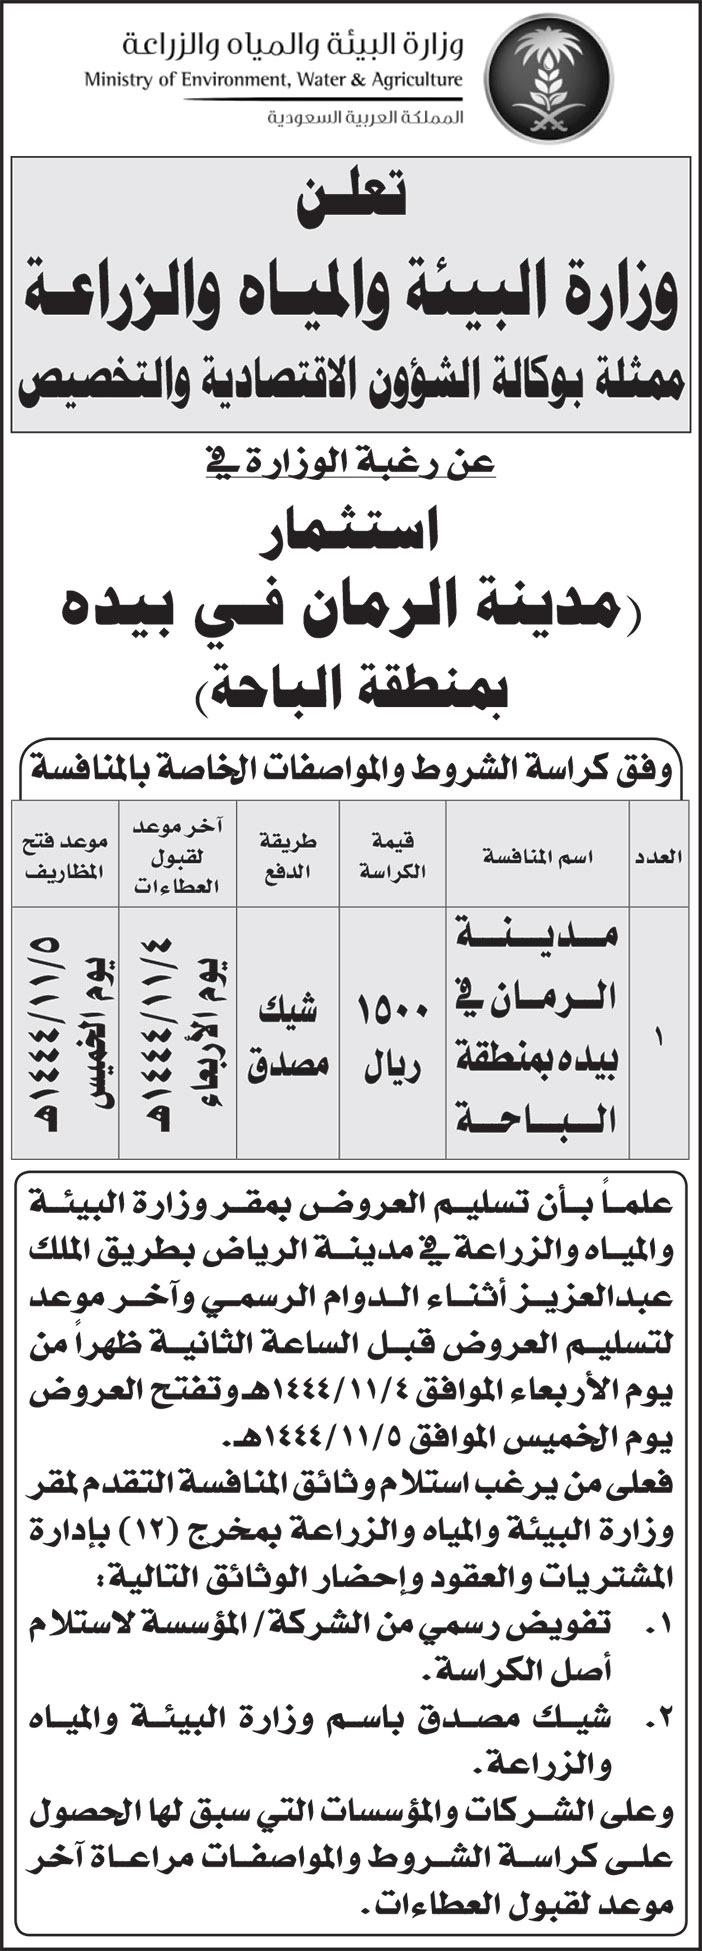 إعلان وزارة البيئة والمياه والزراعة - مدينة الرمان في بيده 